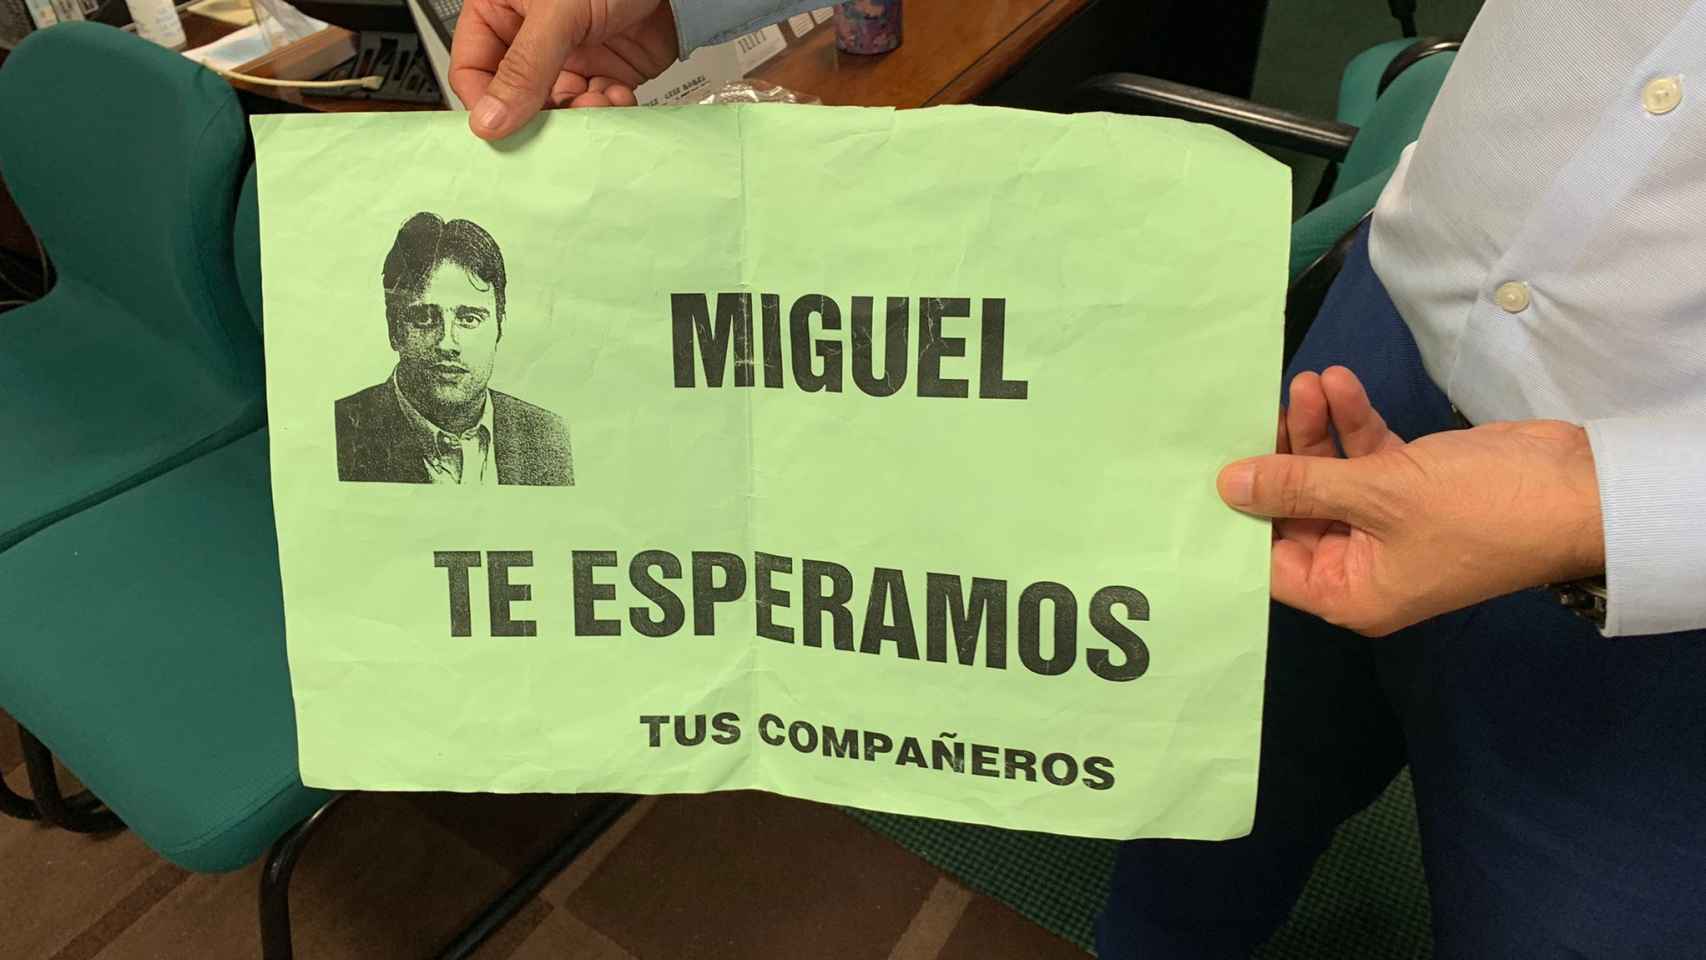 Juan tuvo la idea de hacer el cartel de Miguel, te esperamos que dio la vuelta al mundo. Enseña un original.